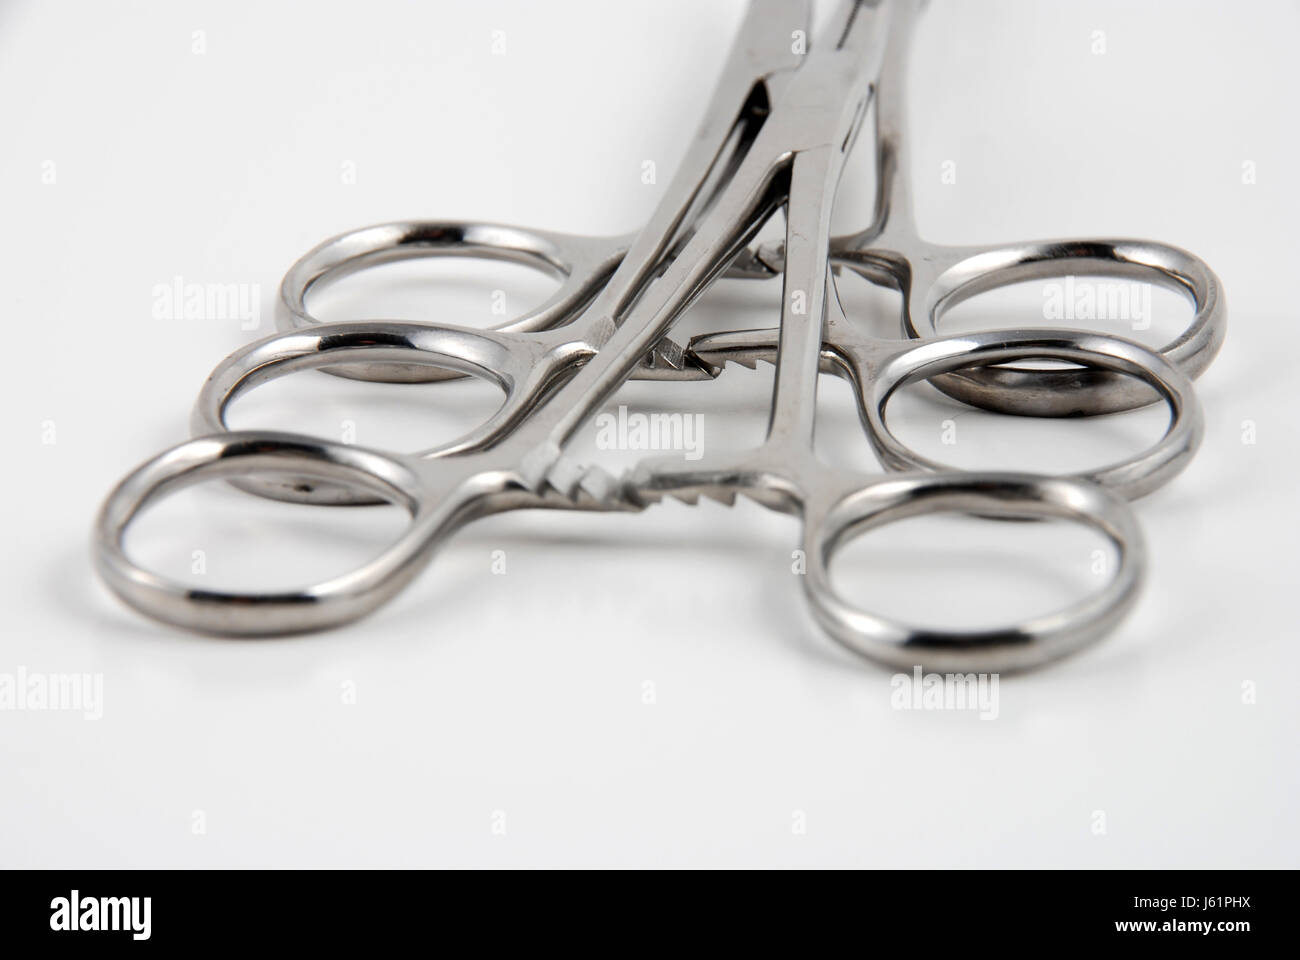 Werkzeuge Chirurgie dental gezackten Werkzeug Werkzeuge medizinisch medizinische Industrie industrielle Stockfoto